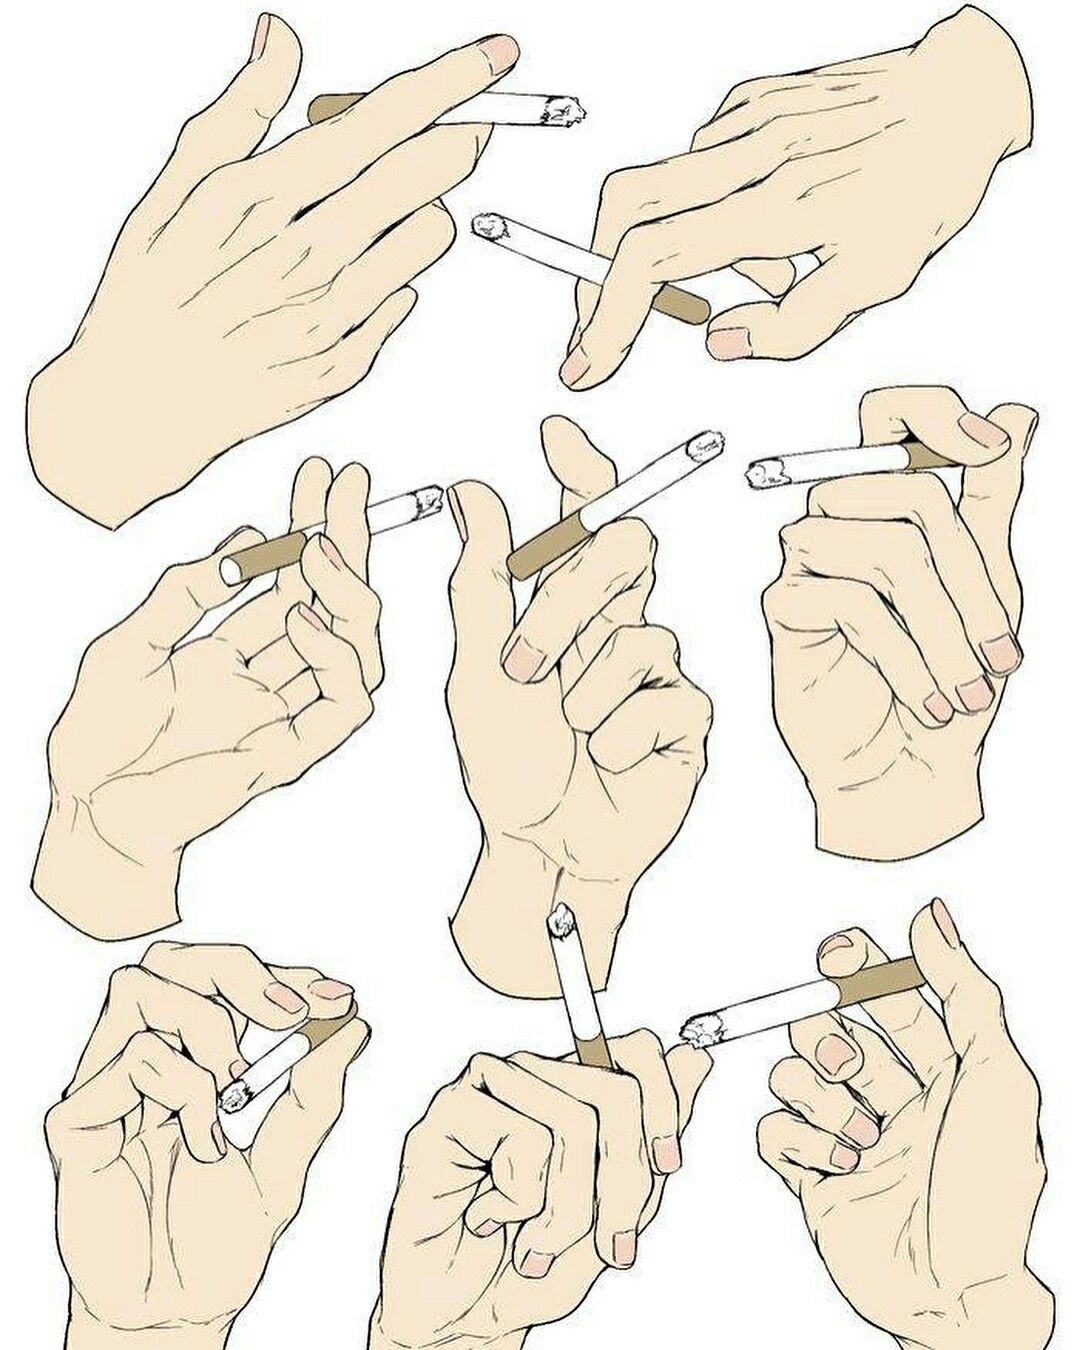 Draw неправильный. Рука держит сигарету. Рука с сигаретой референс. Рука держит сигарету референс. Сигара в руке референс.